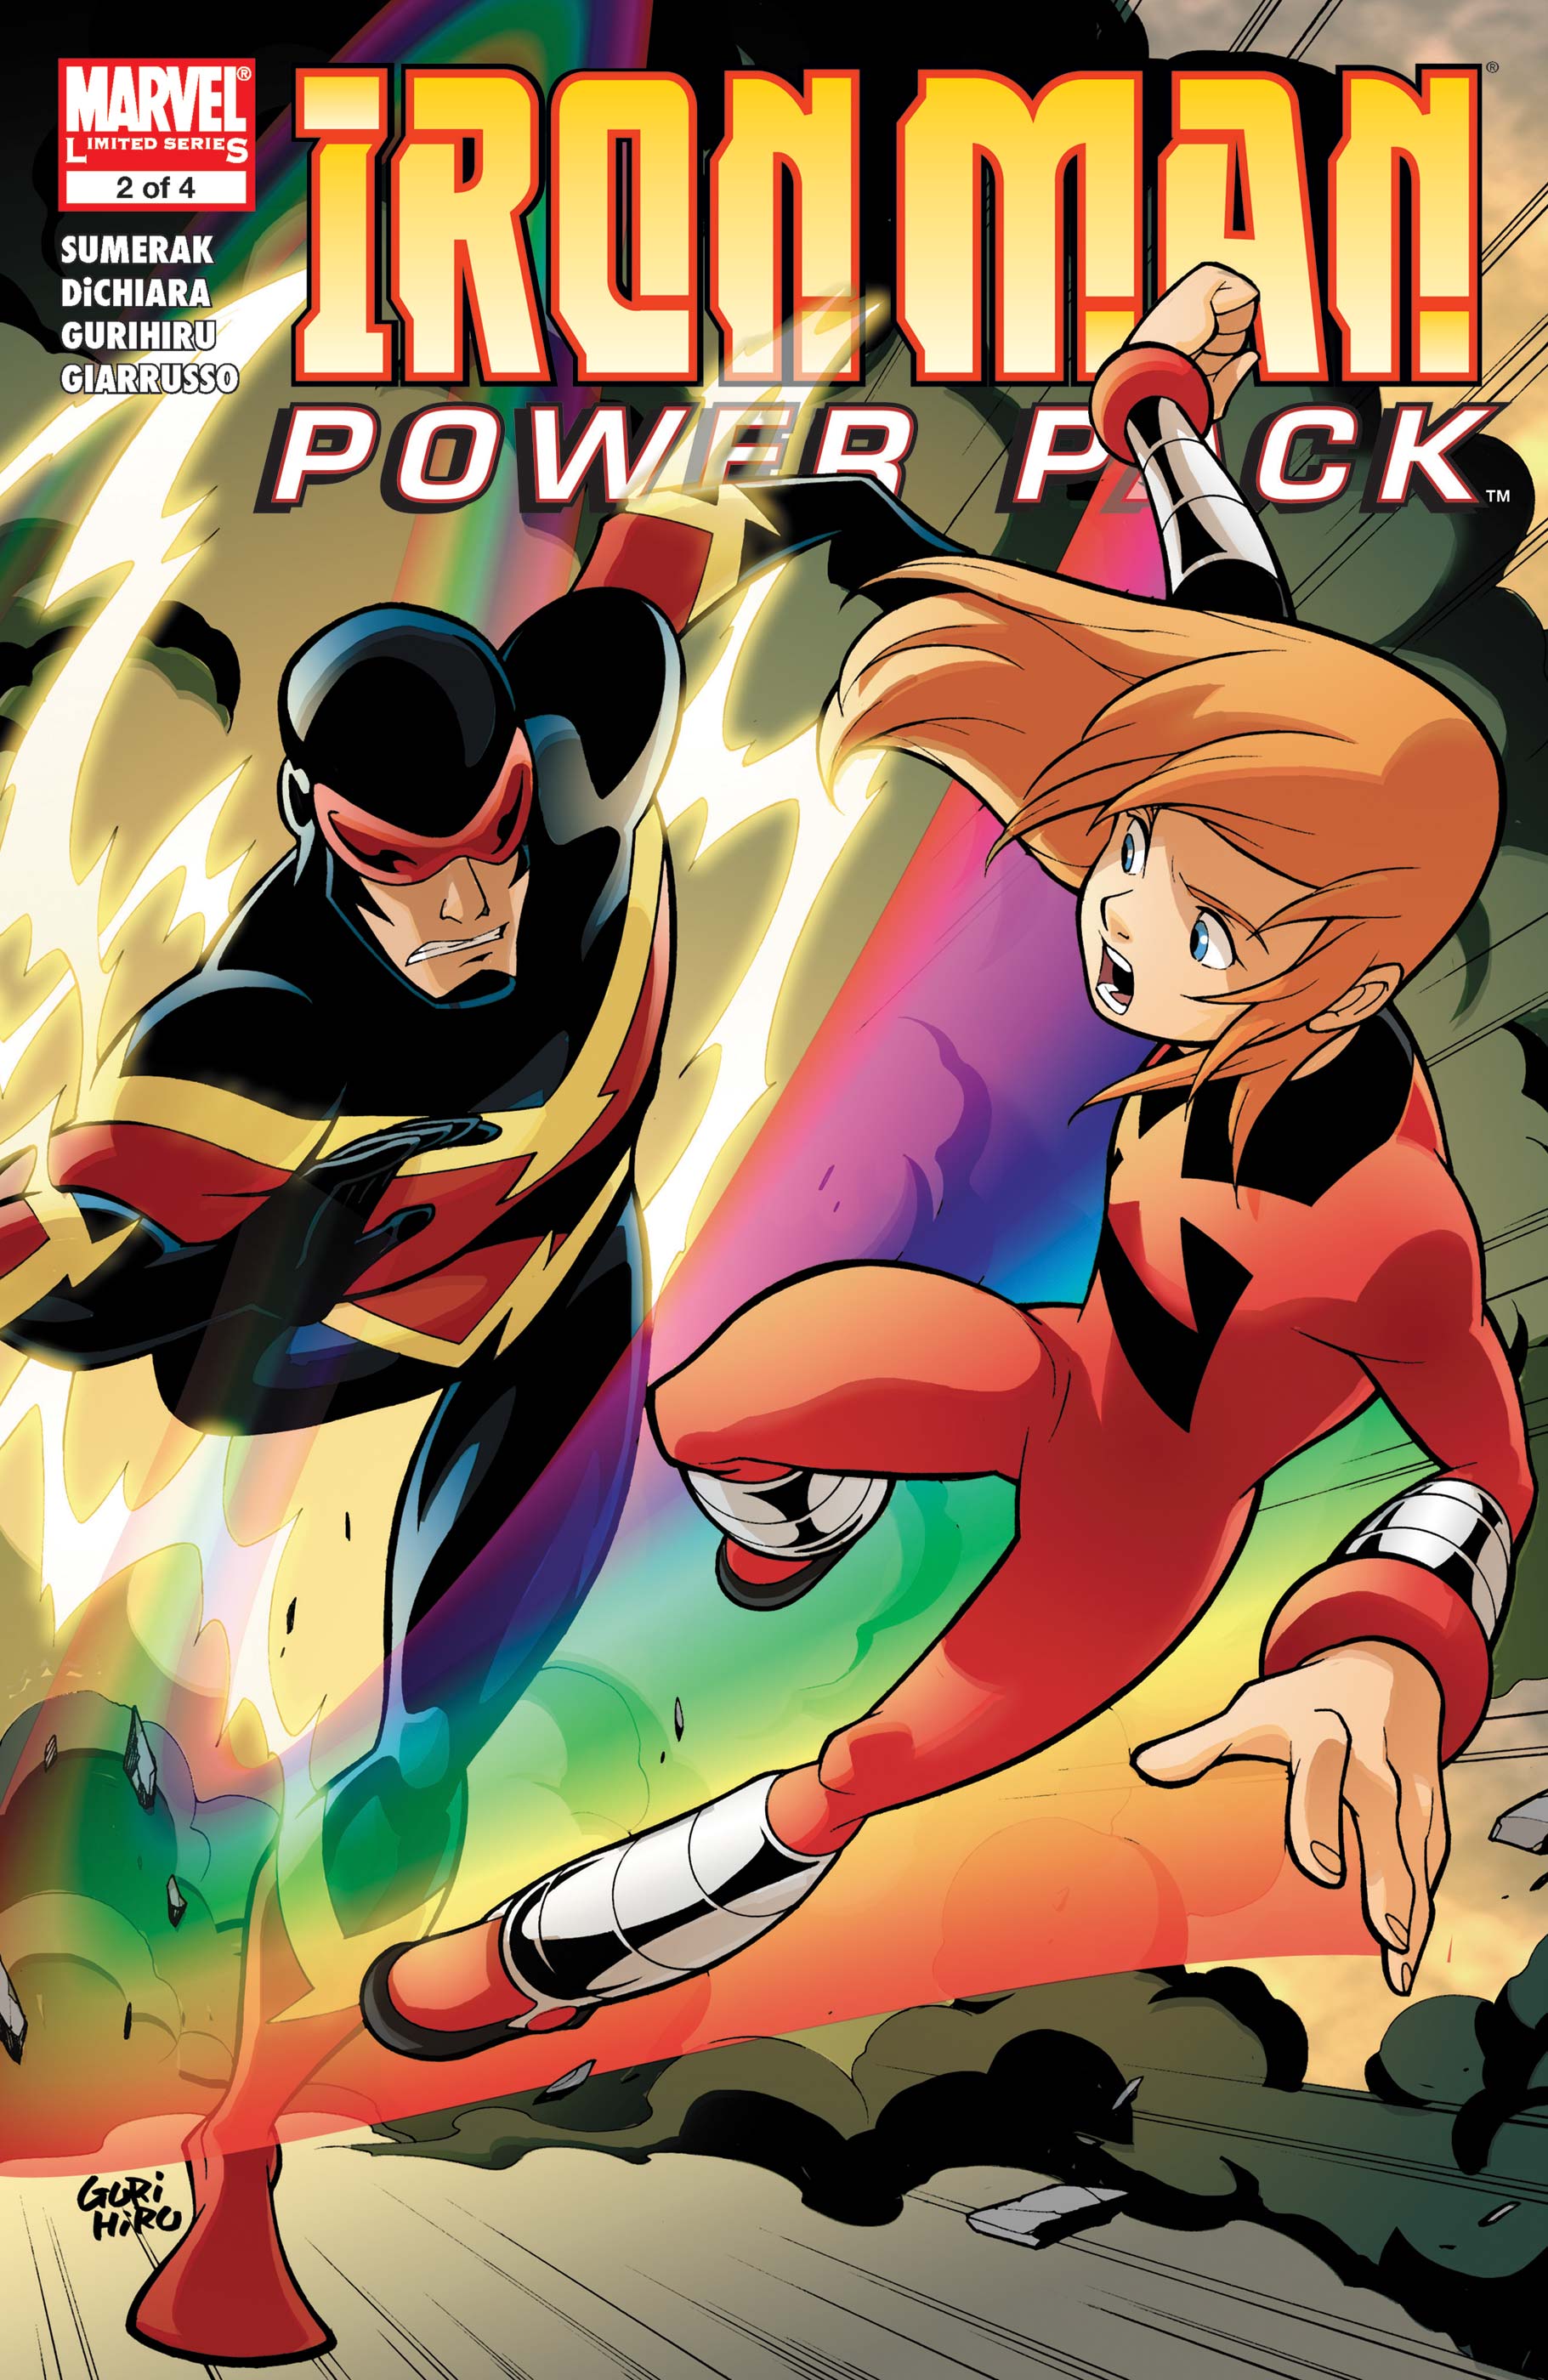 Джули Пауэр Марвел. POWERPACK комиксы. Lightspeed Marvel. Блок питания комиксы. Power pack комикс